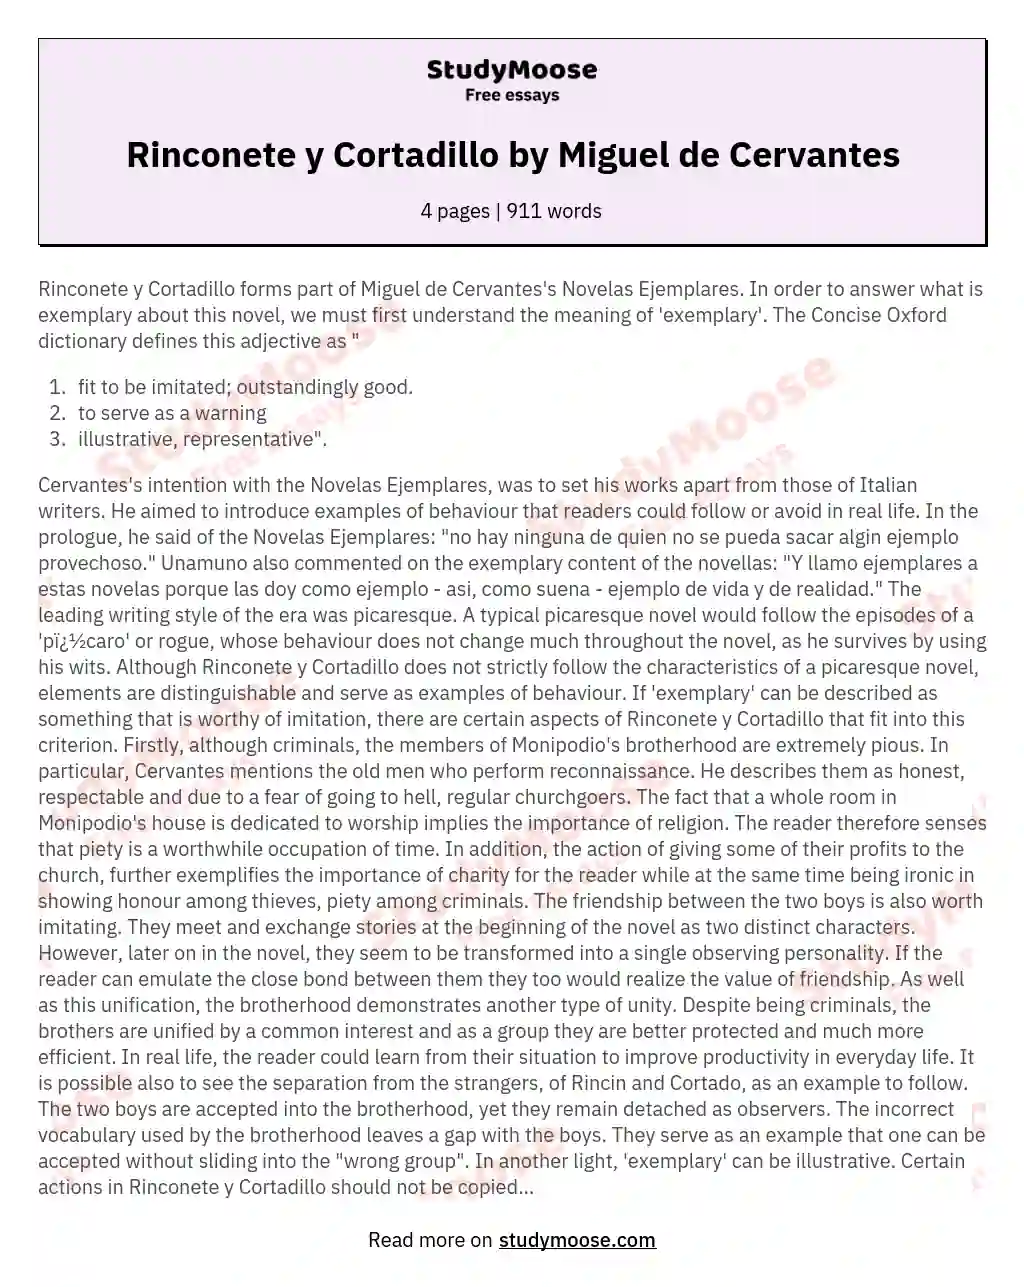 Rinconete y Cortadillo by Miguel de Cervantes essay